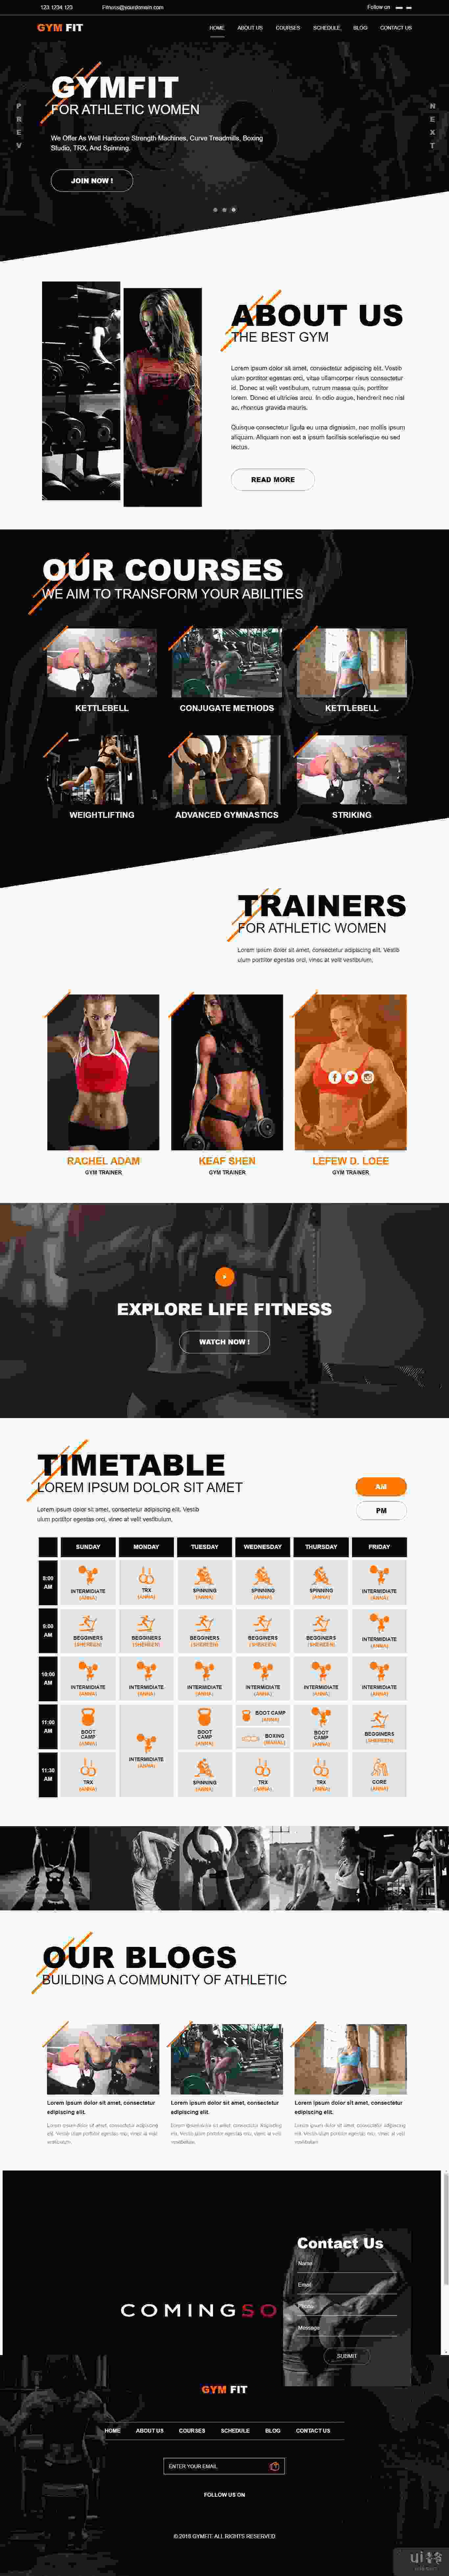 健身房和健身 HTML5 响应式模板(Gym & Fitness HTML5 Responsive Template)插图